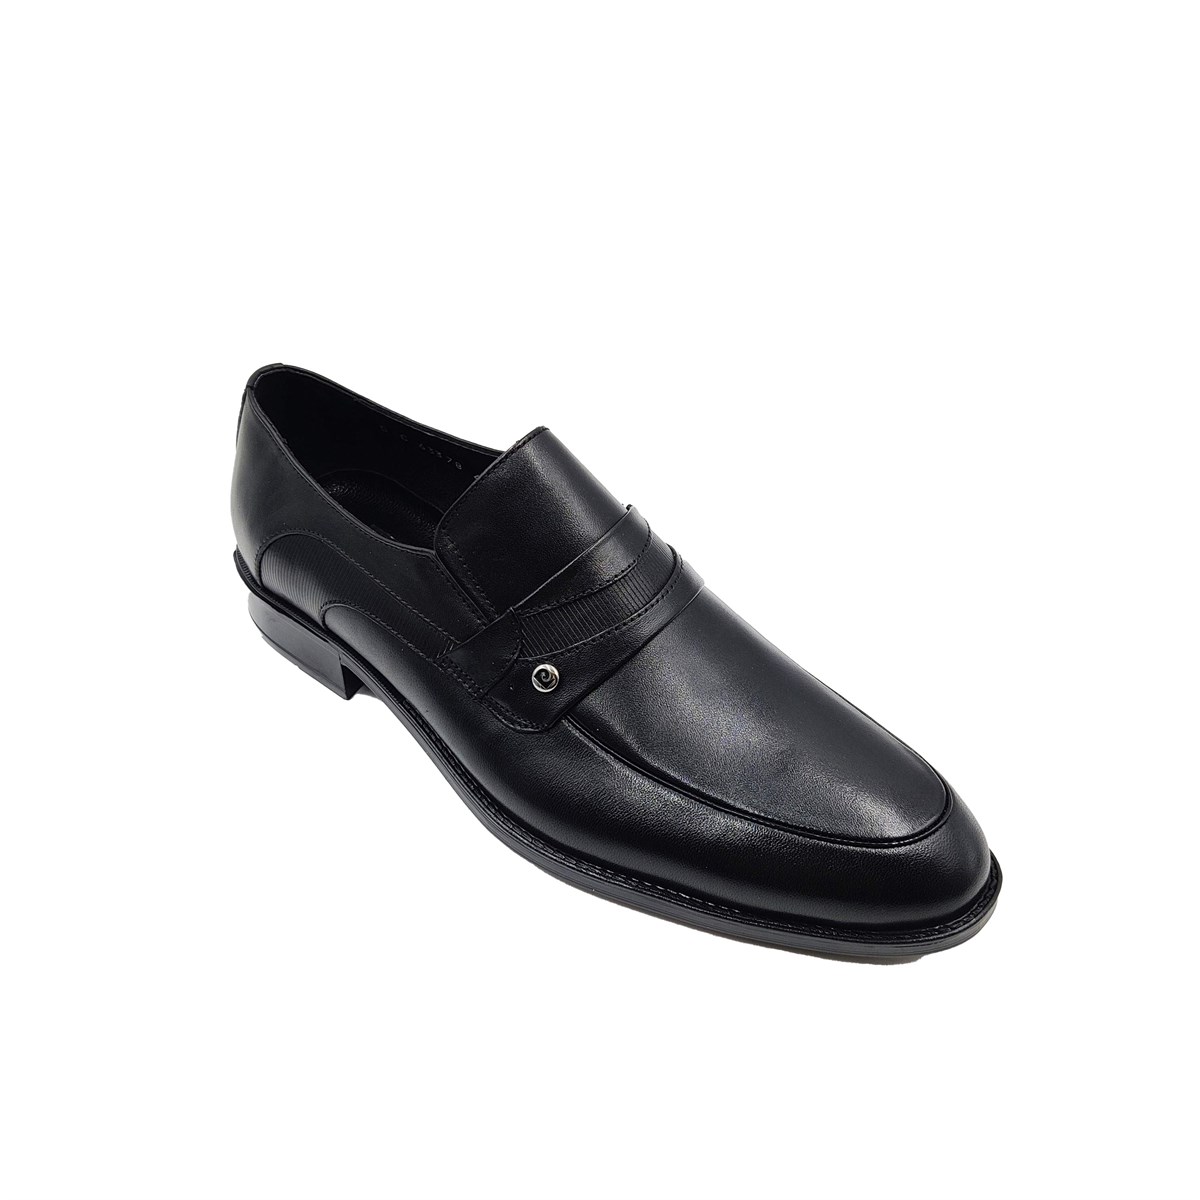 63378 - Pierre Cardin Erkek Ayakkabı Modelleri